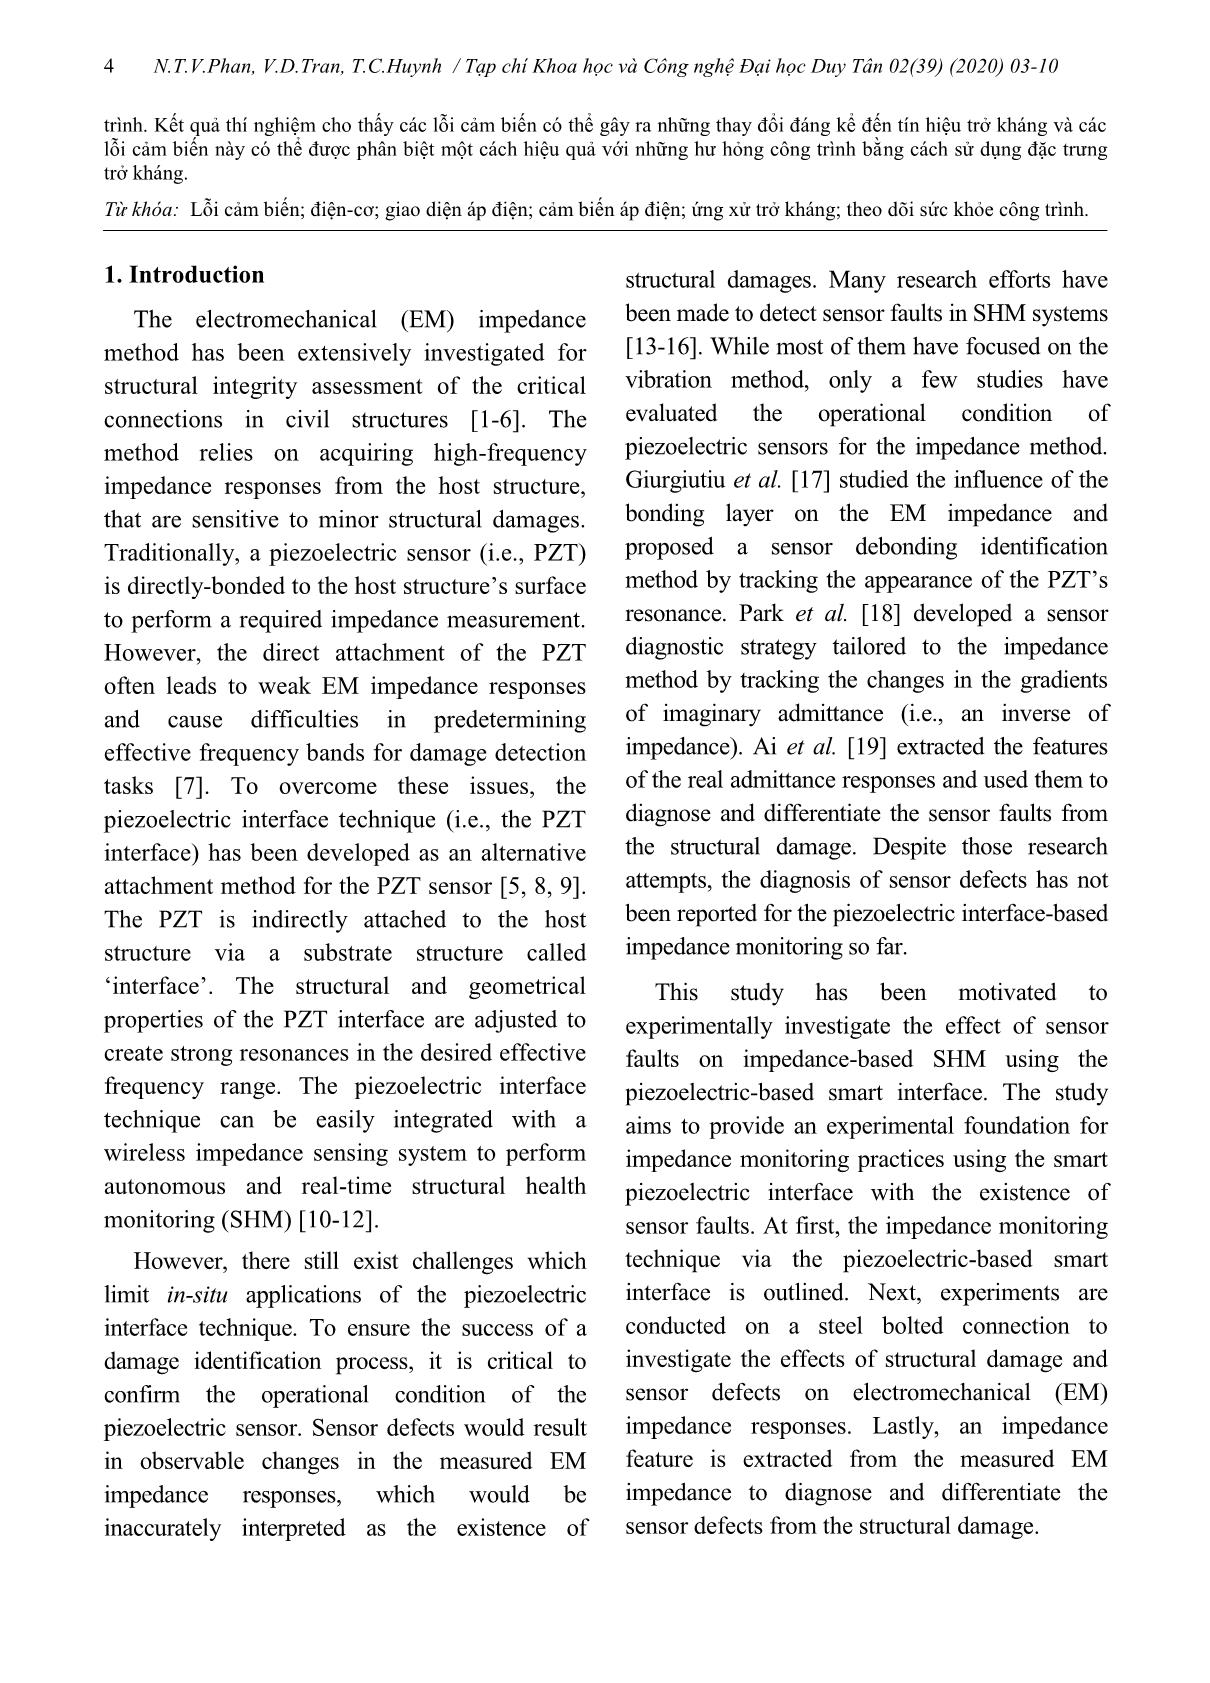 Nghiên cứu thực nghiệm về chẩn đoán lỗi cảm biến cho việc giám sát sức khỏe kết cấu bằng kỹ thuật giao diện áp điện trang 2